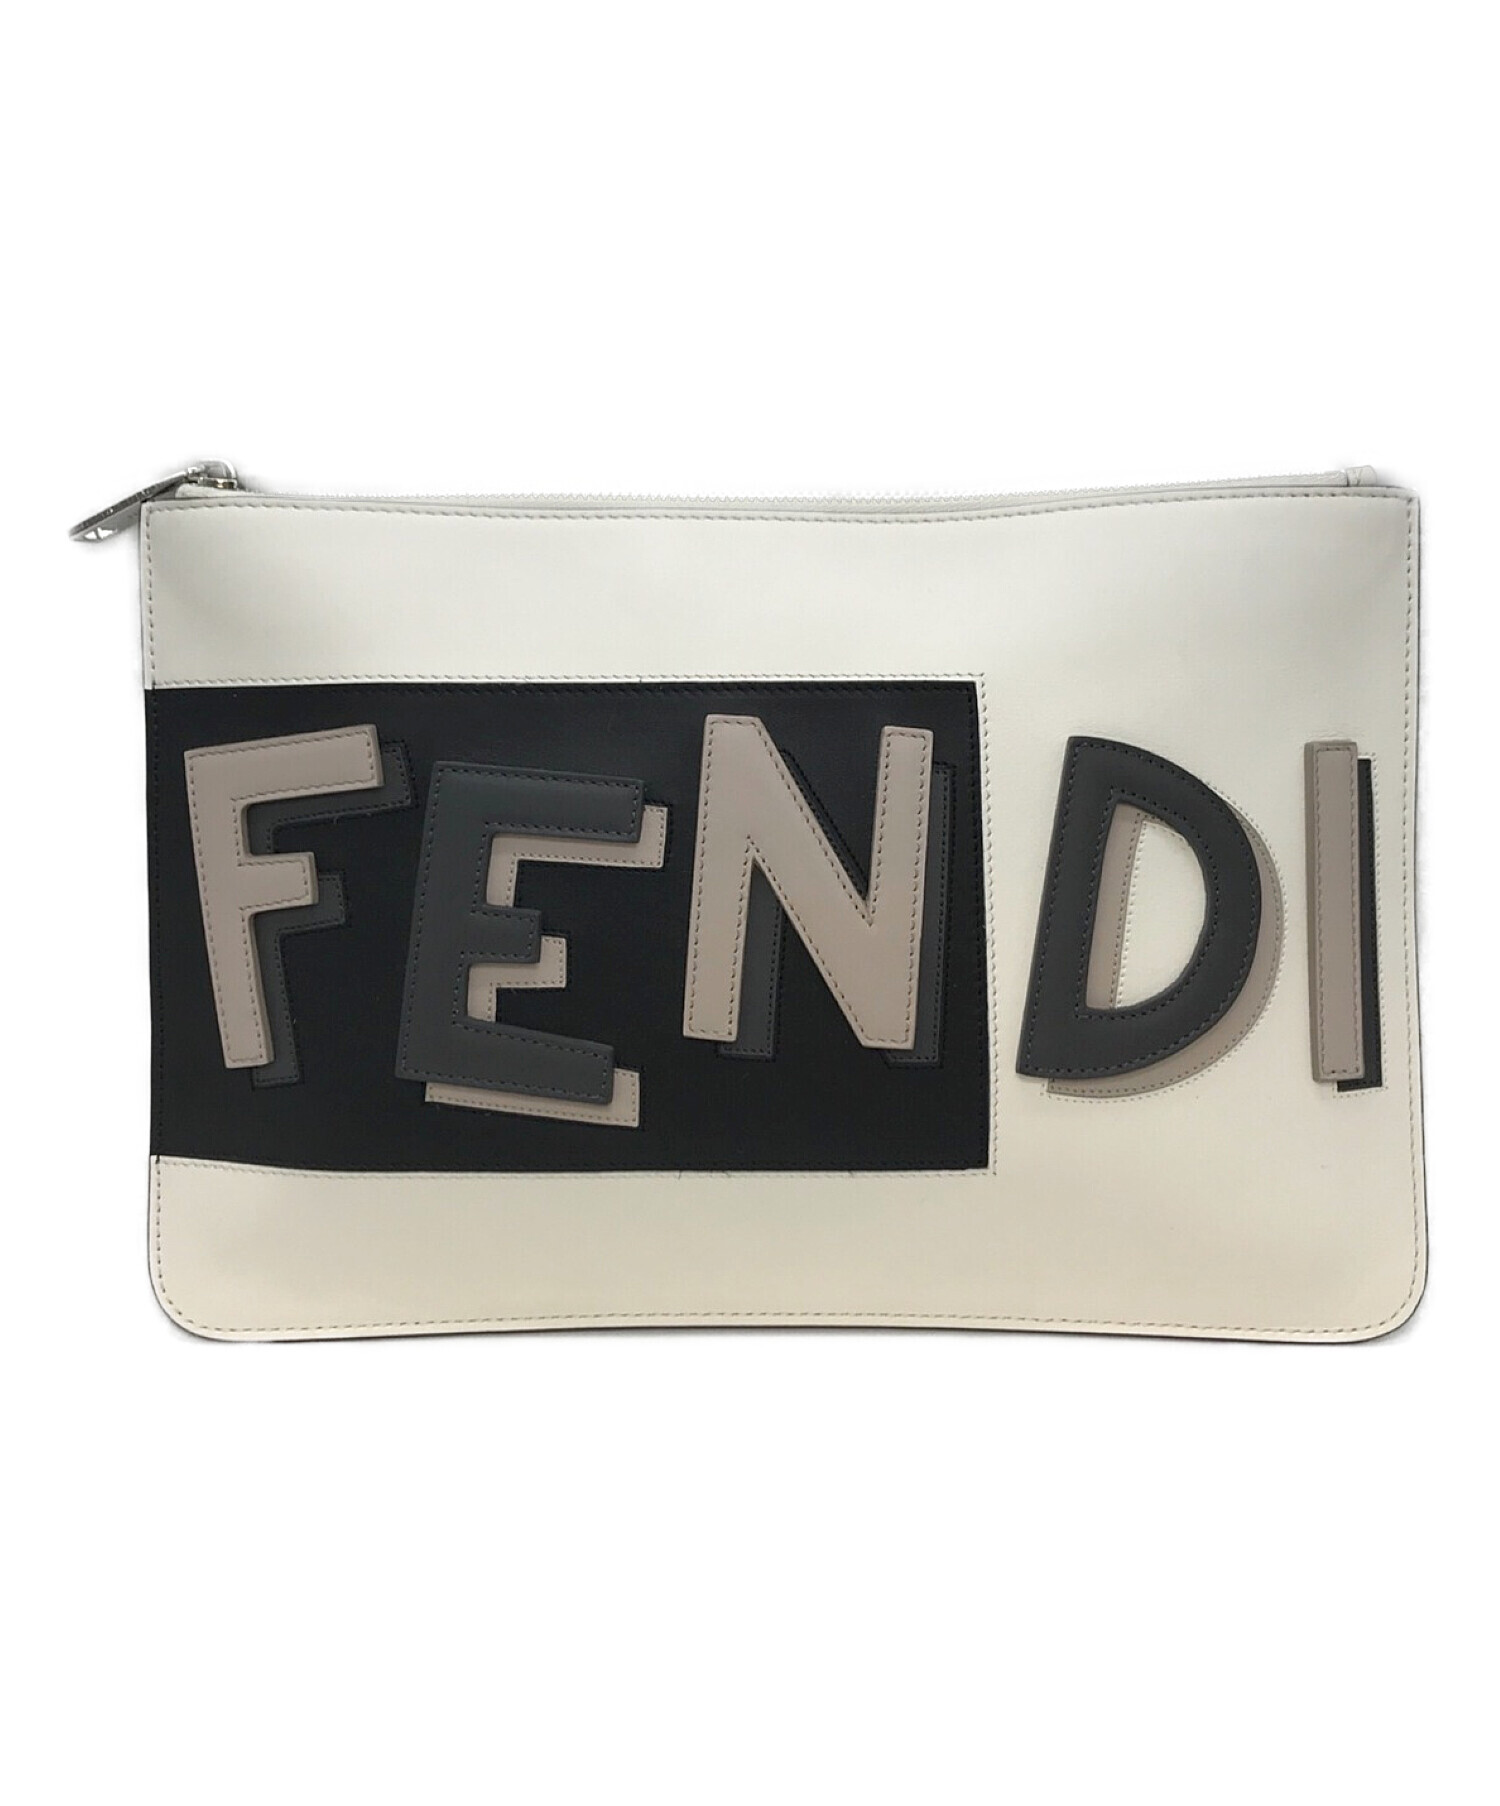 中古・古着通販】FENDI (フェンディ) Clutch bag ホワイト×ブラック 